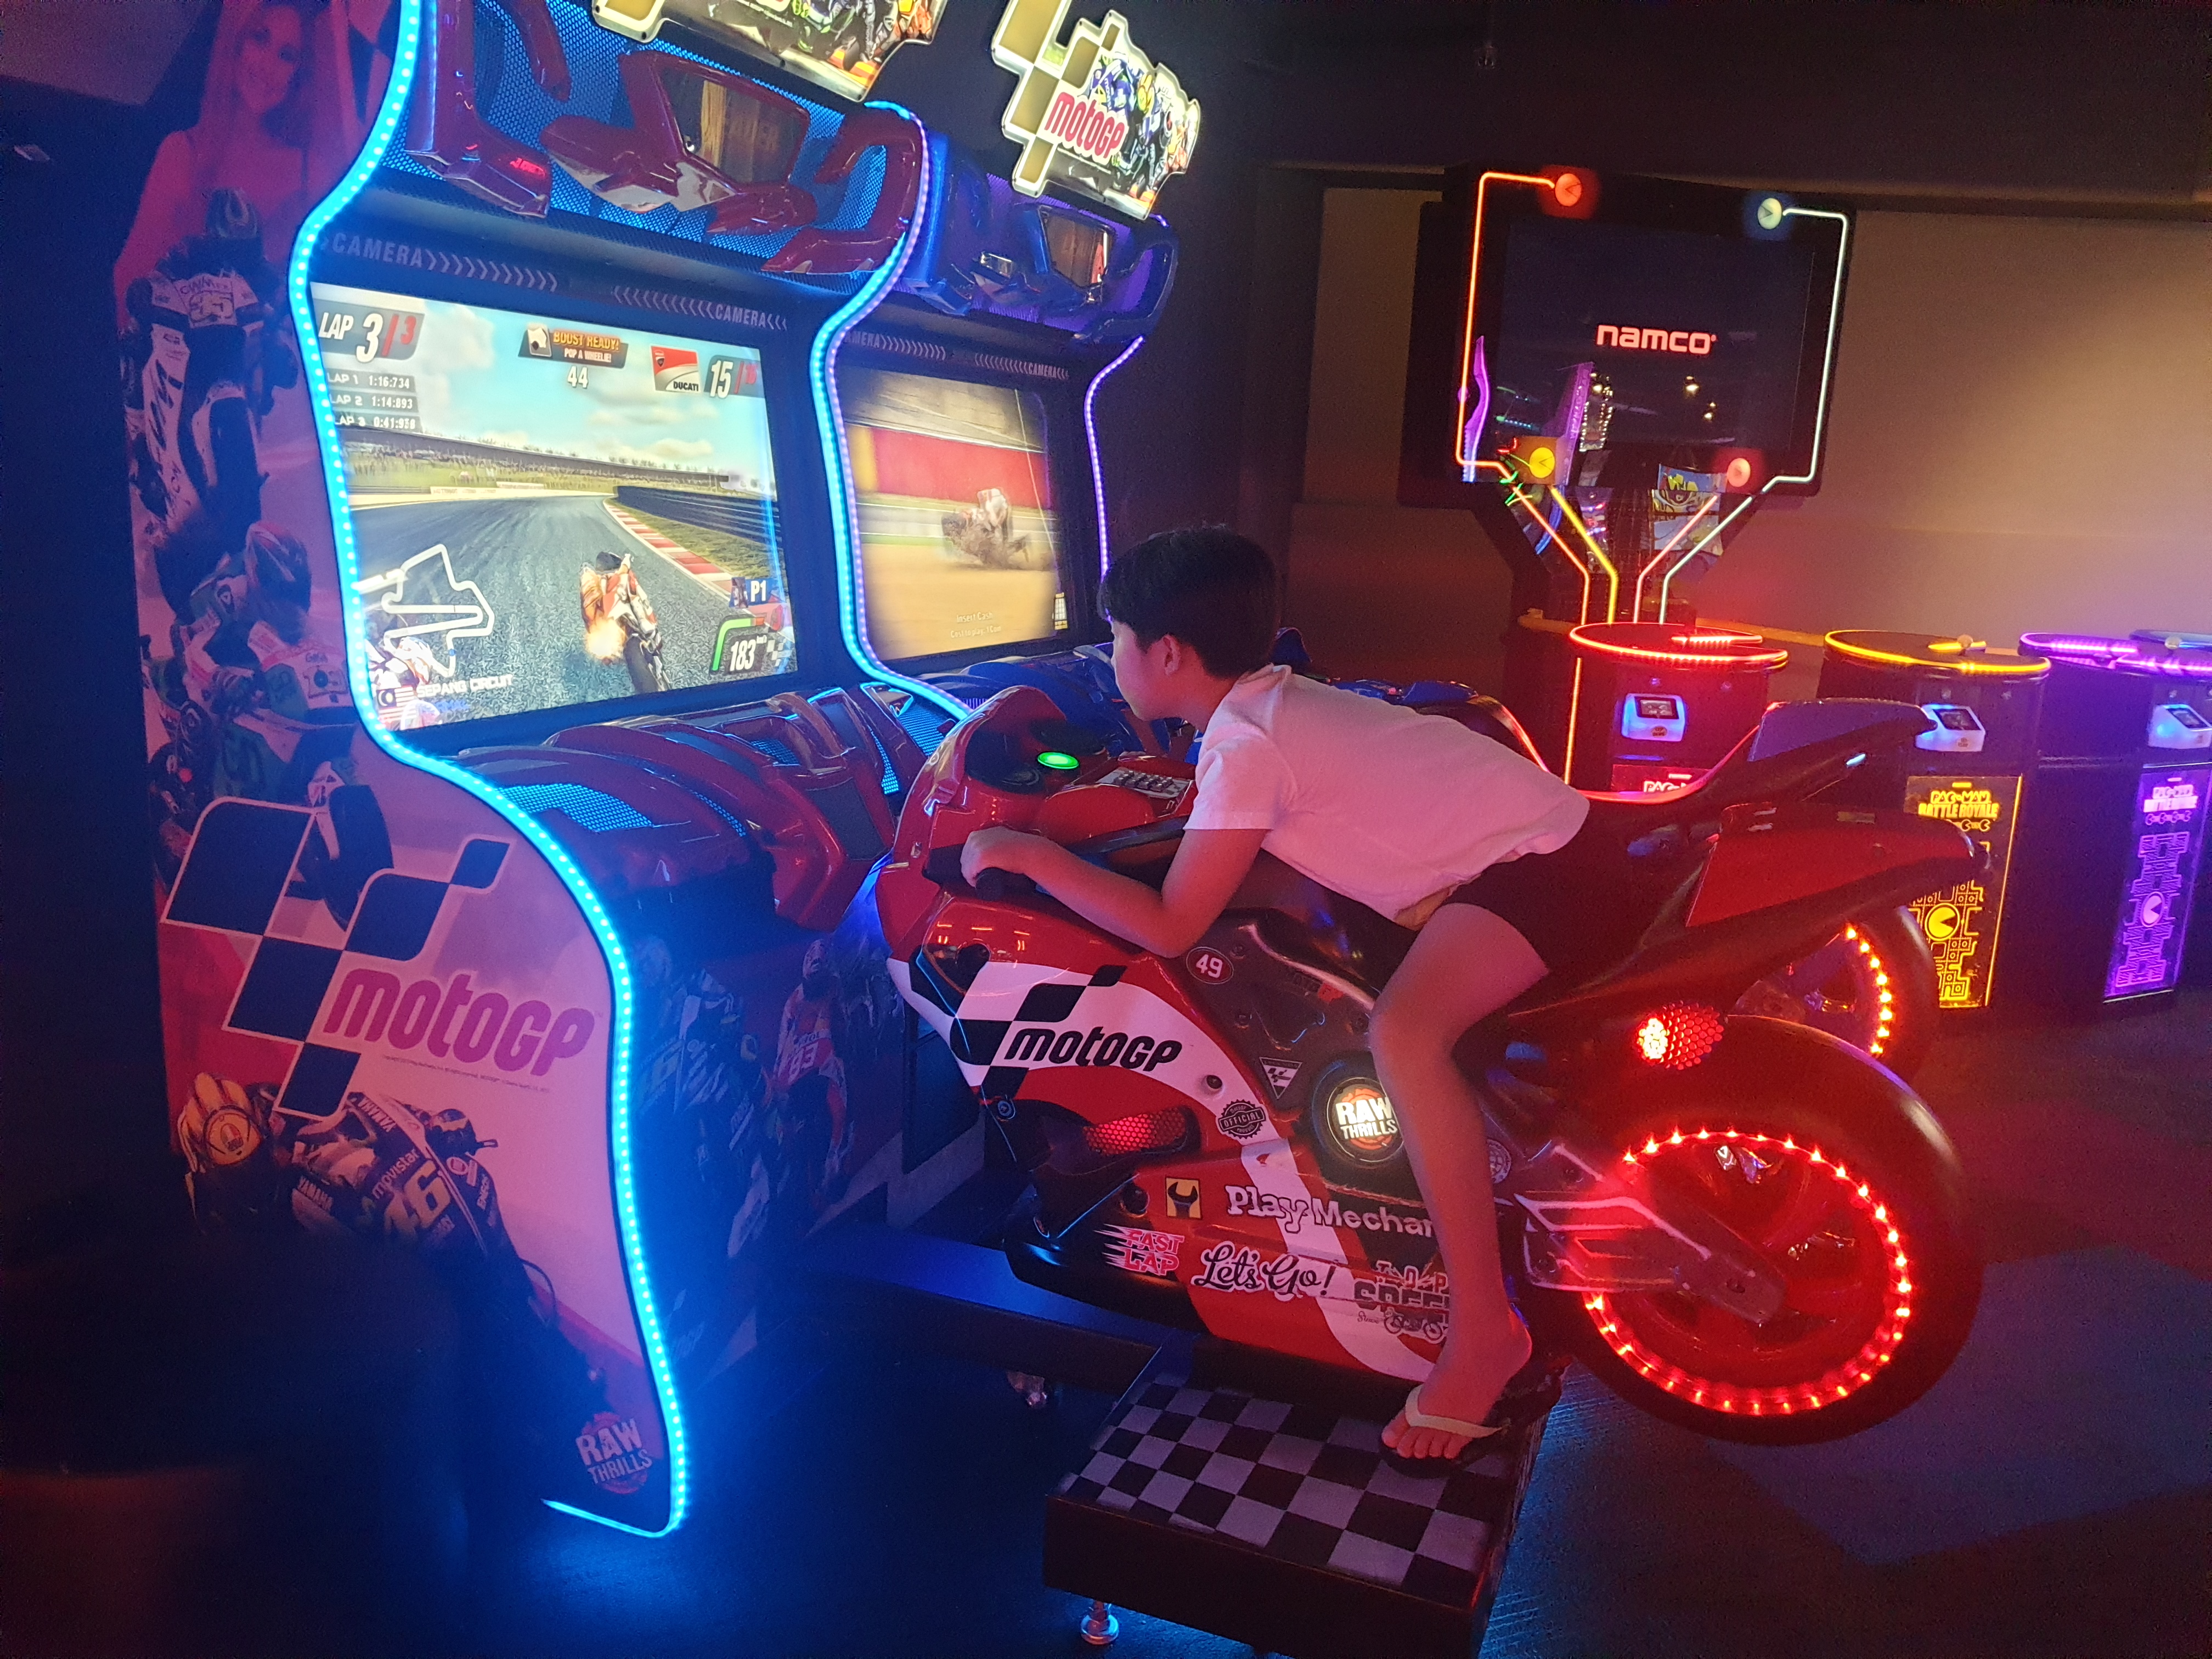 GameOn Arcade